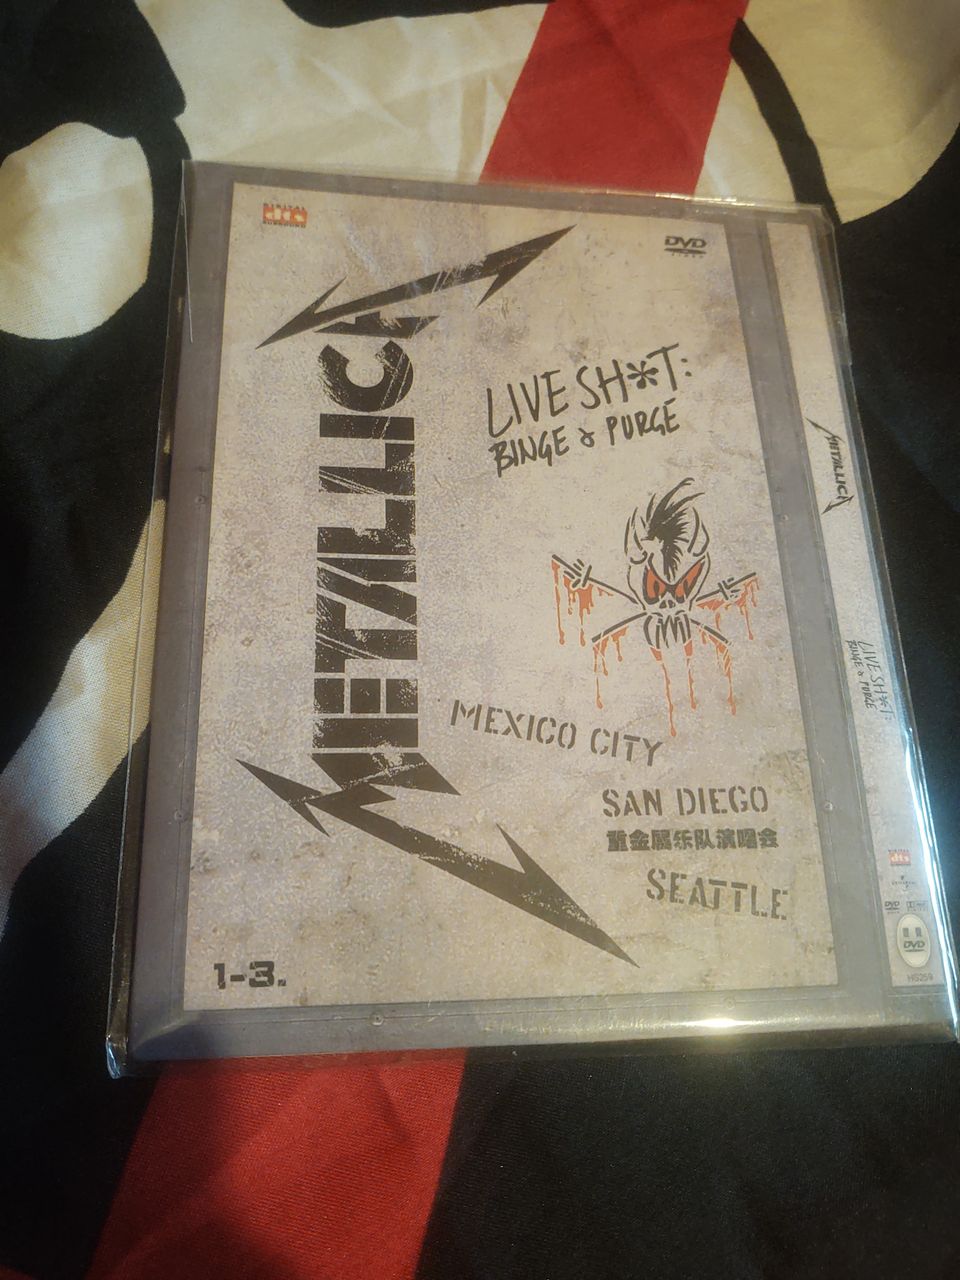 Metallica Live shit:Binge&Purge